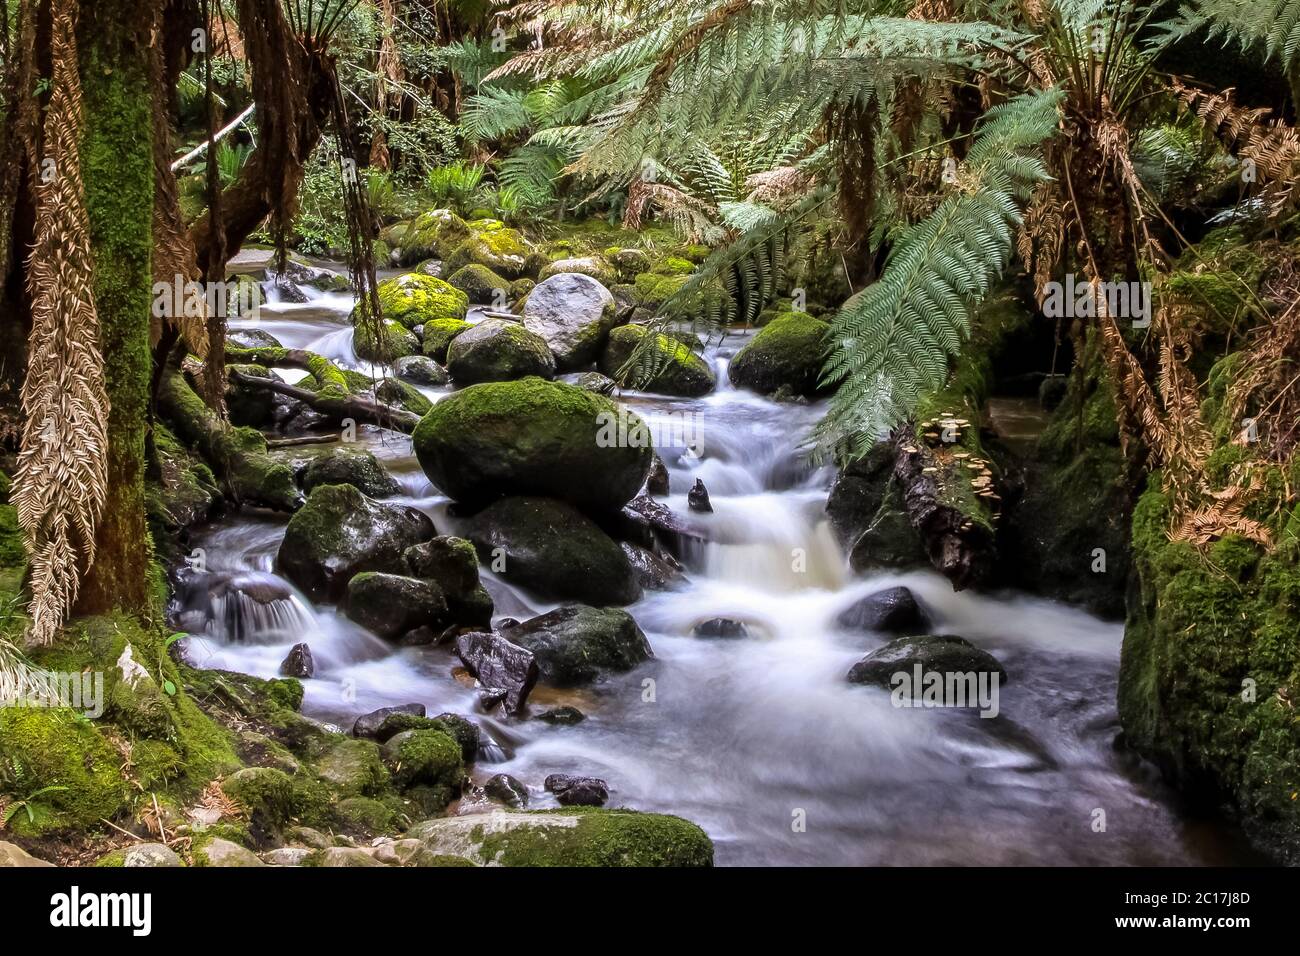 Stream flowing through lush rainforest, St Columba Falls, Tasmania, Australia Stock Photo